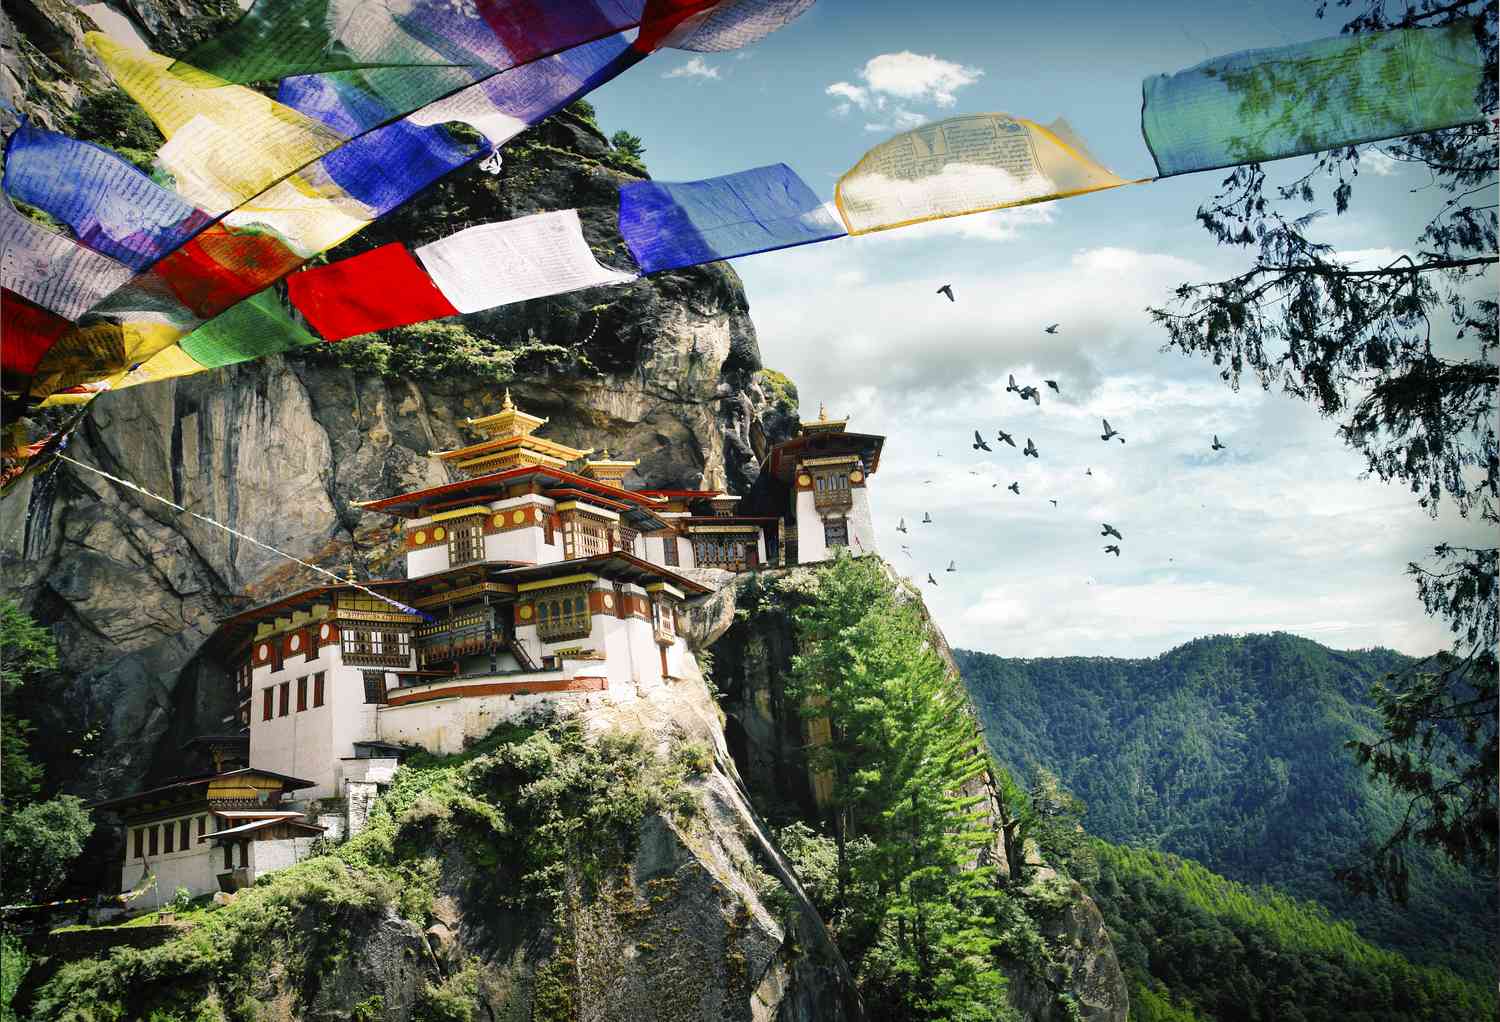 Best of Western Bhutan